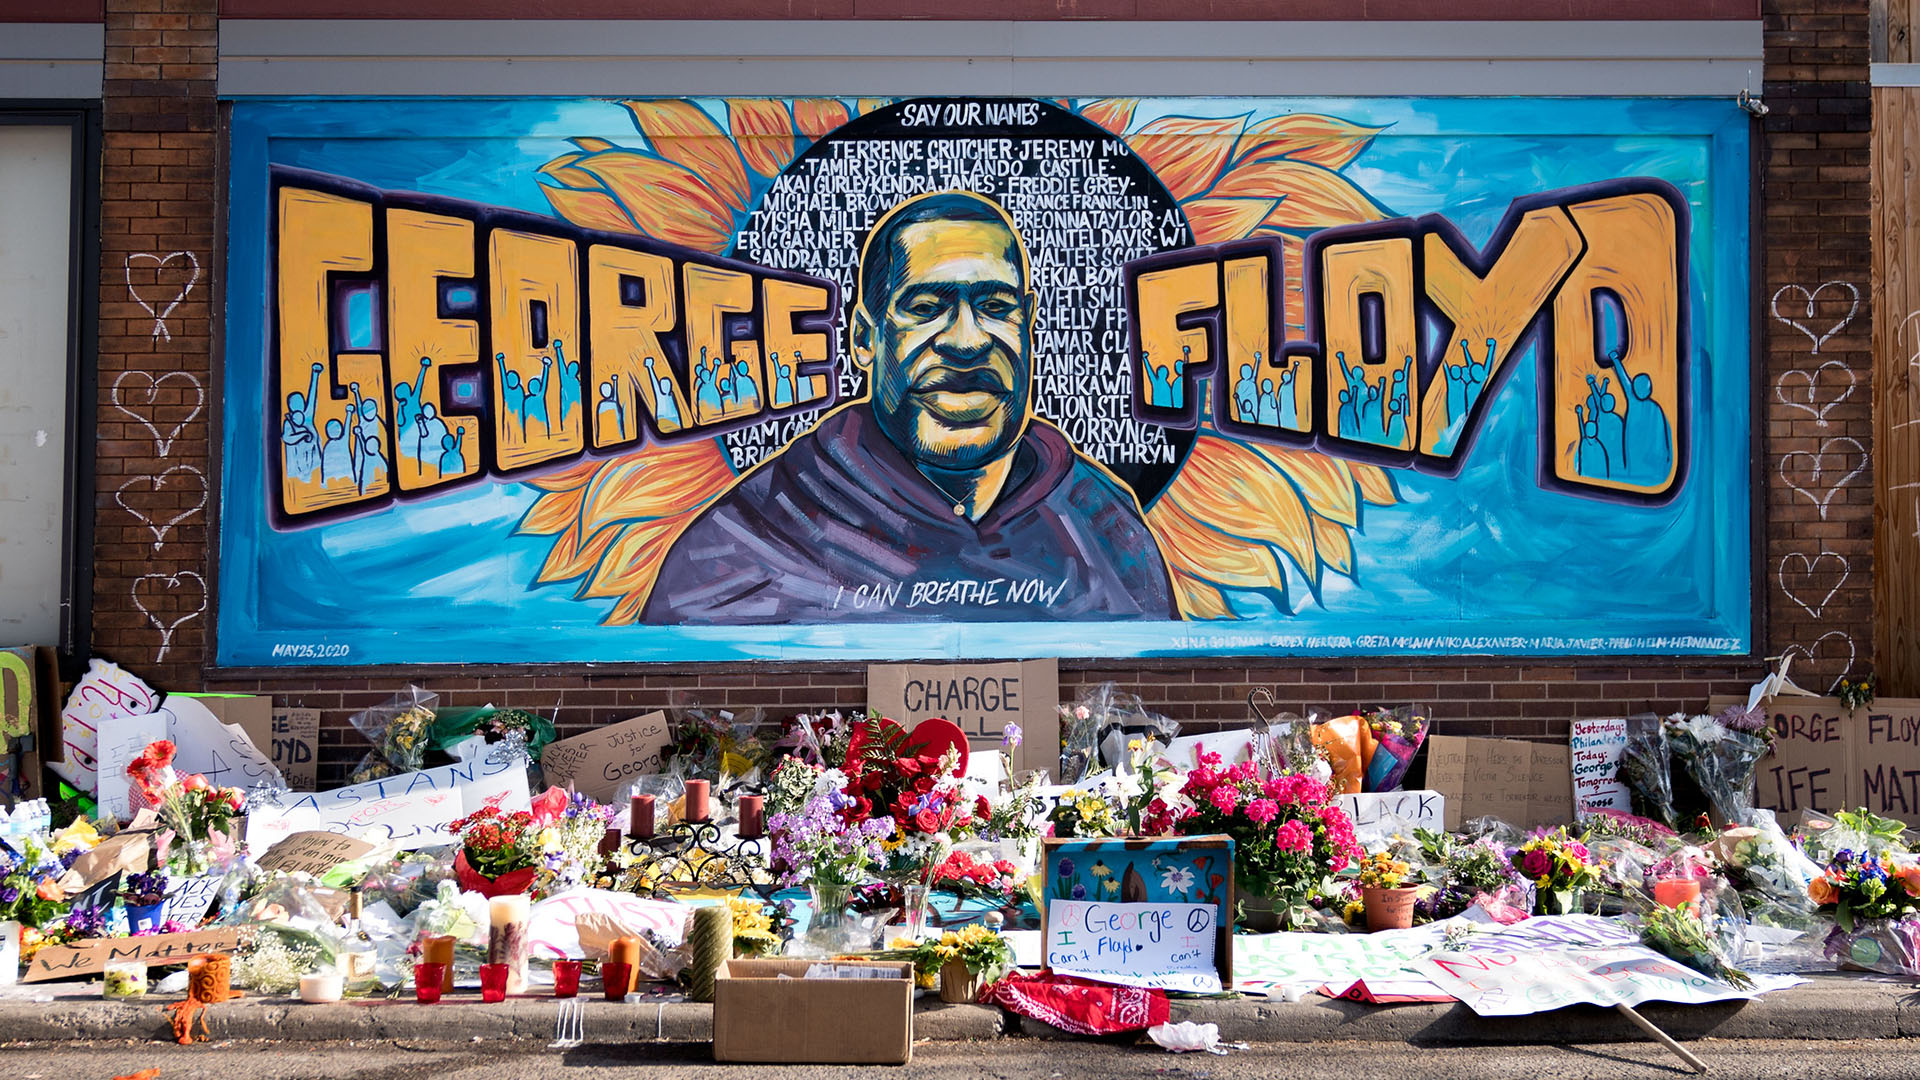 Fresque en hommage à George Floyd, assassiné à Minneapolis | © Flickr/
Lorie Shaull/CC BY-SA 2.0